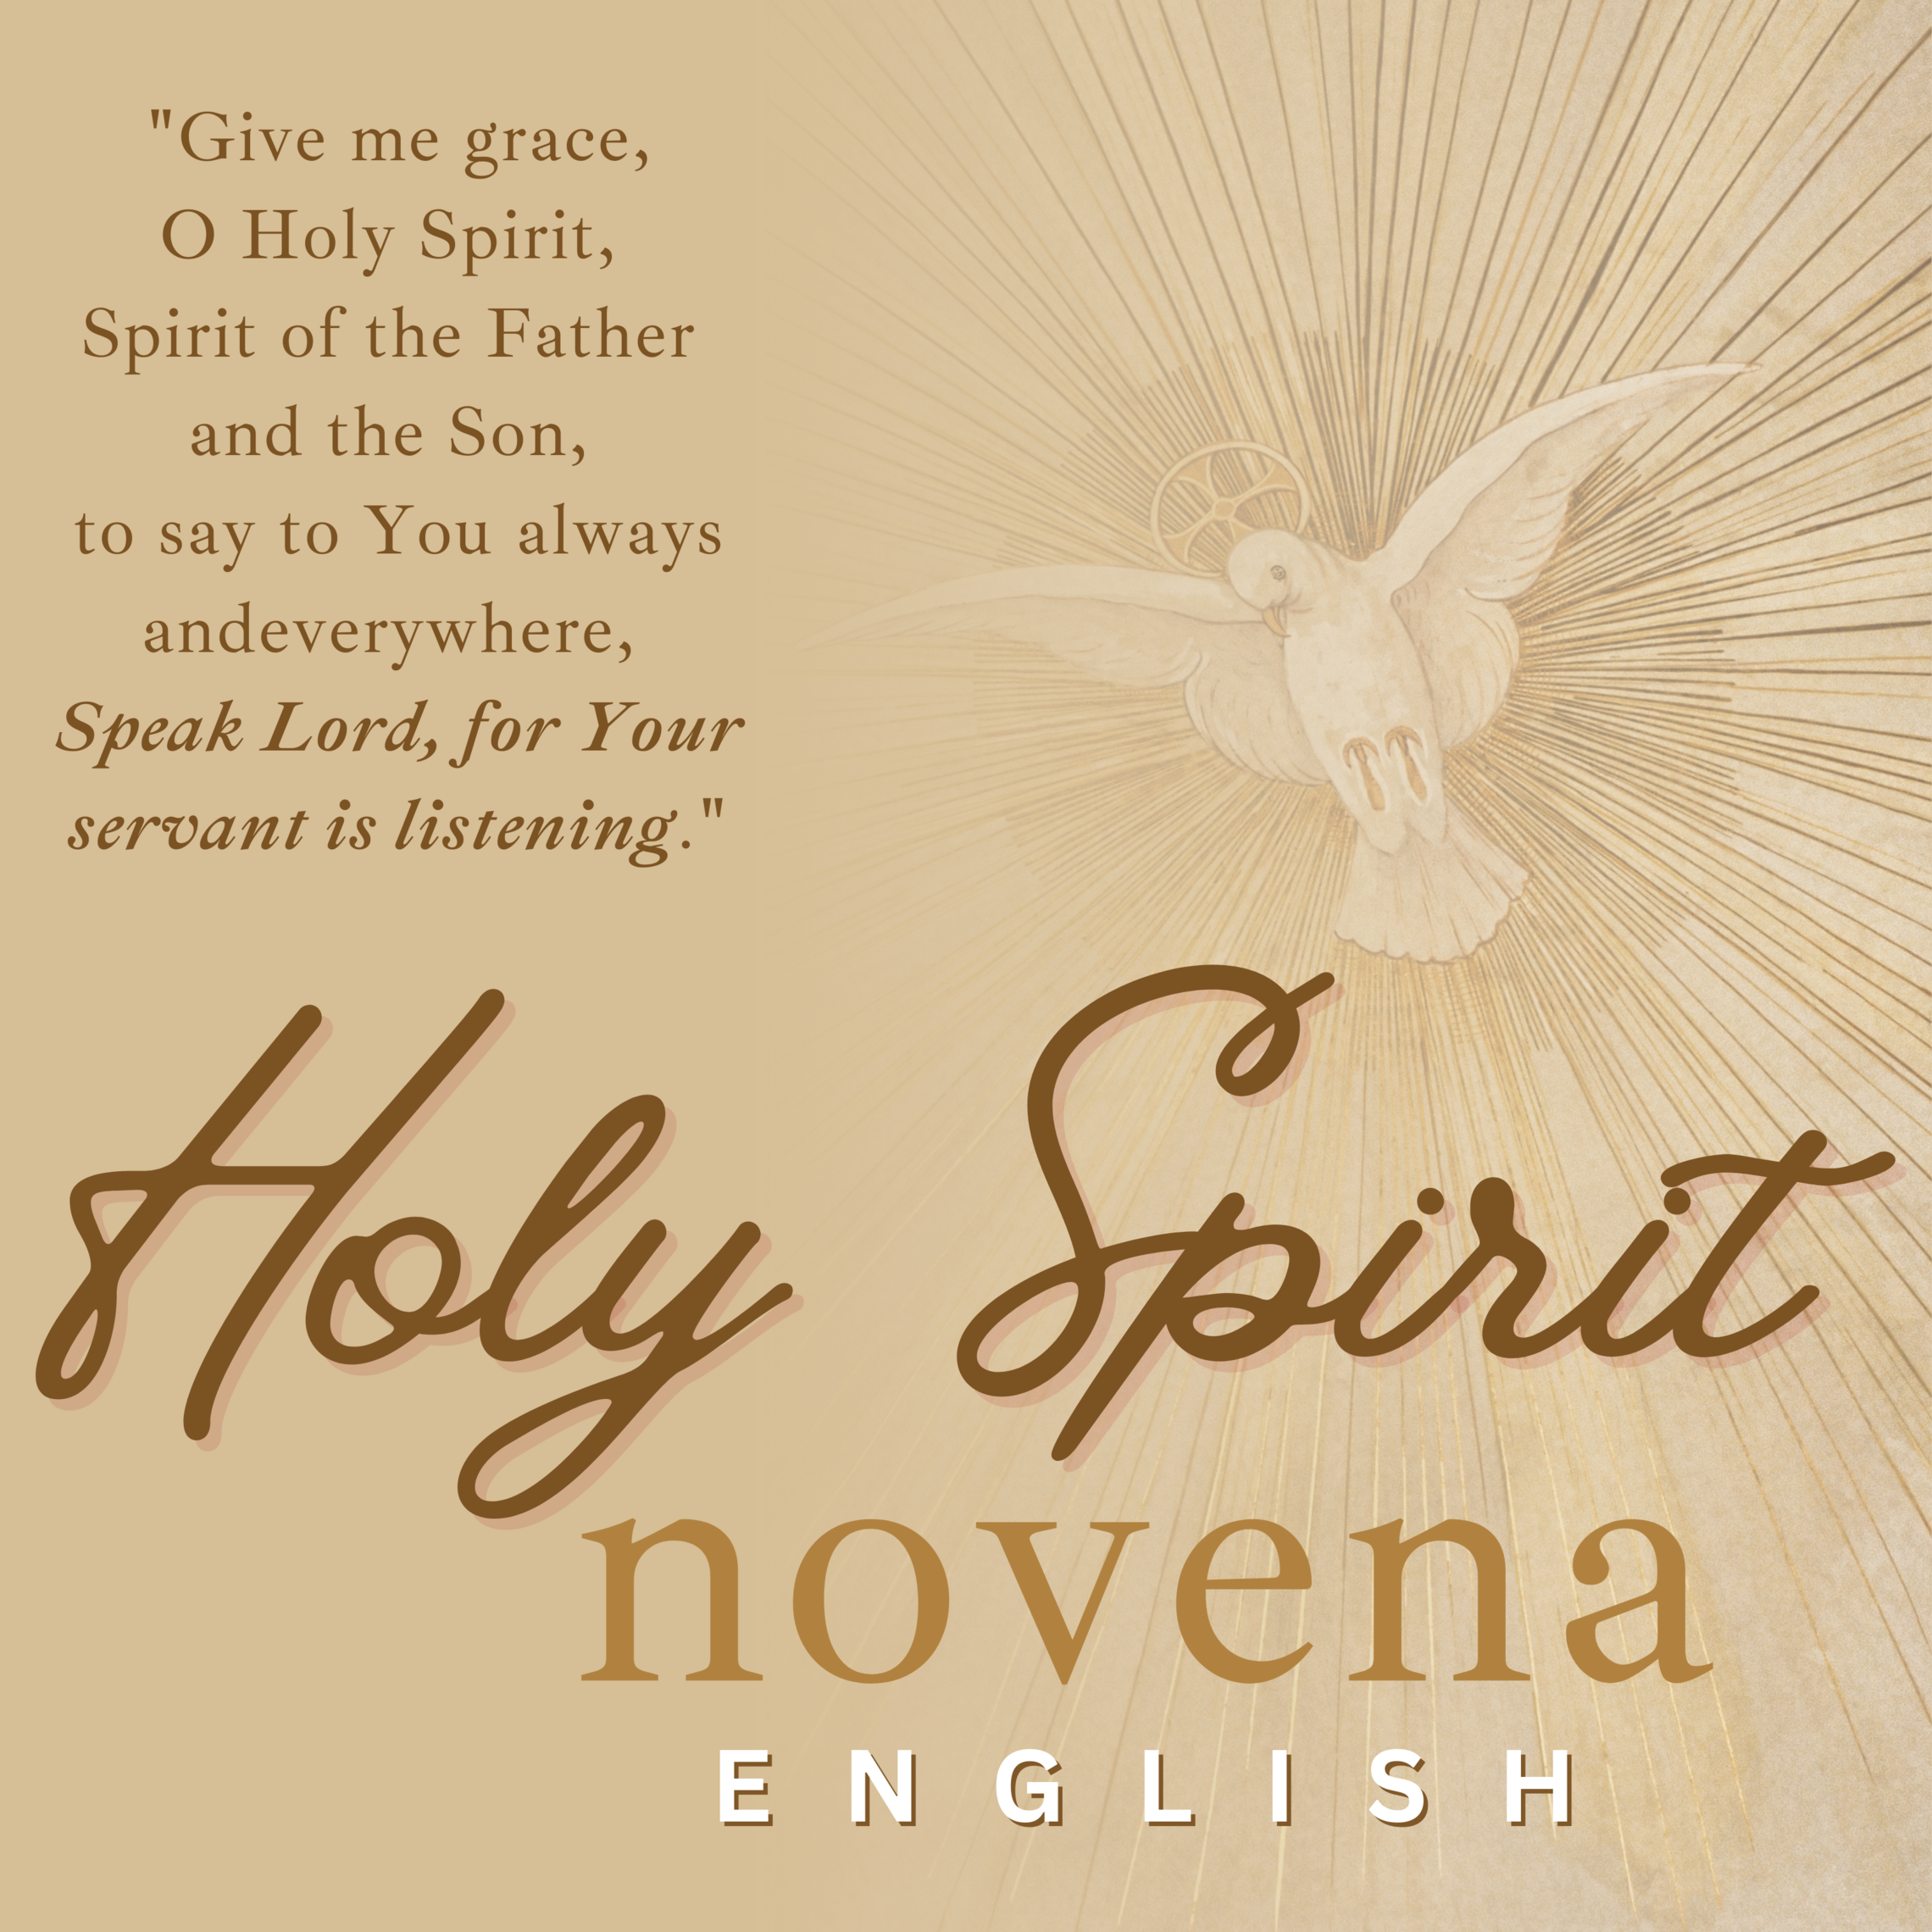 Holy Spirit Novena Image English